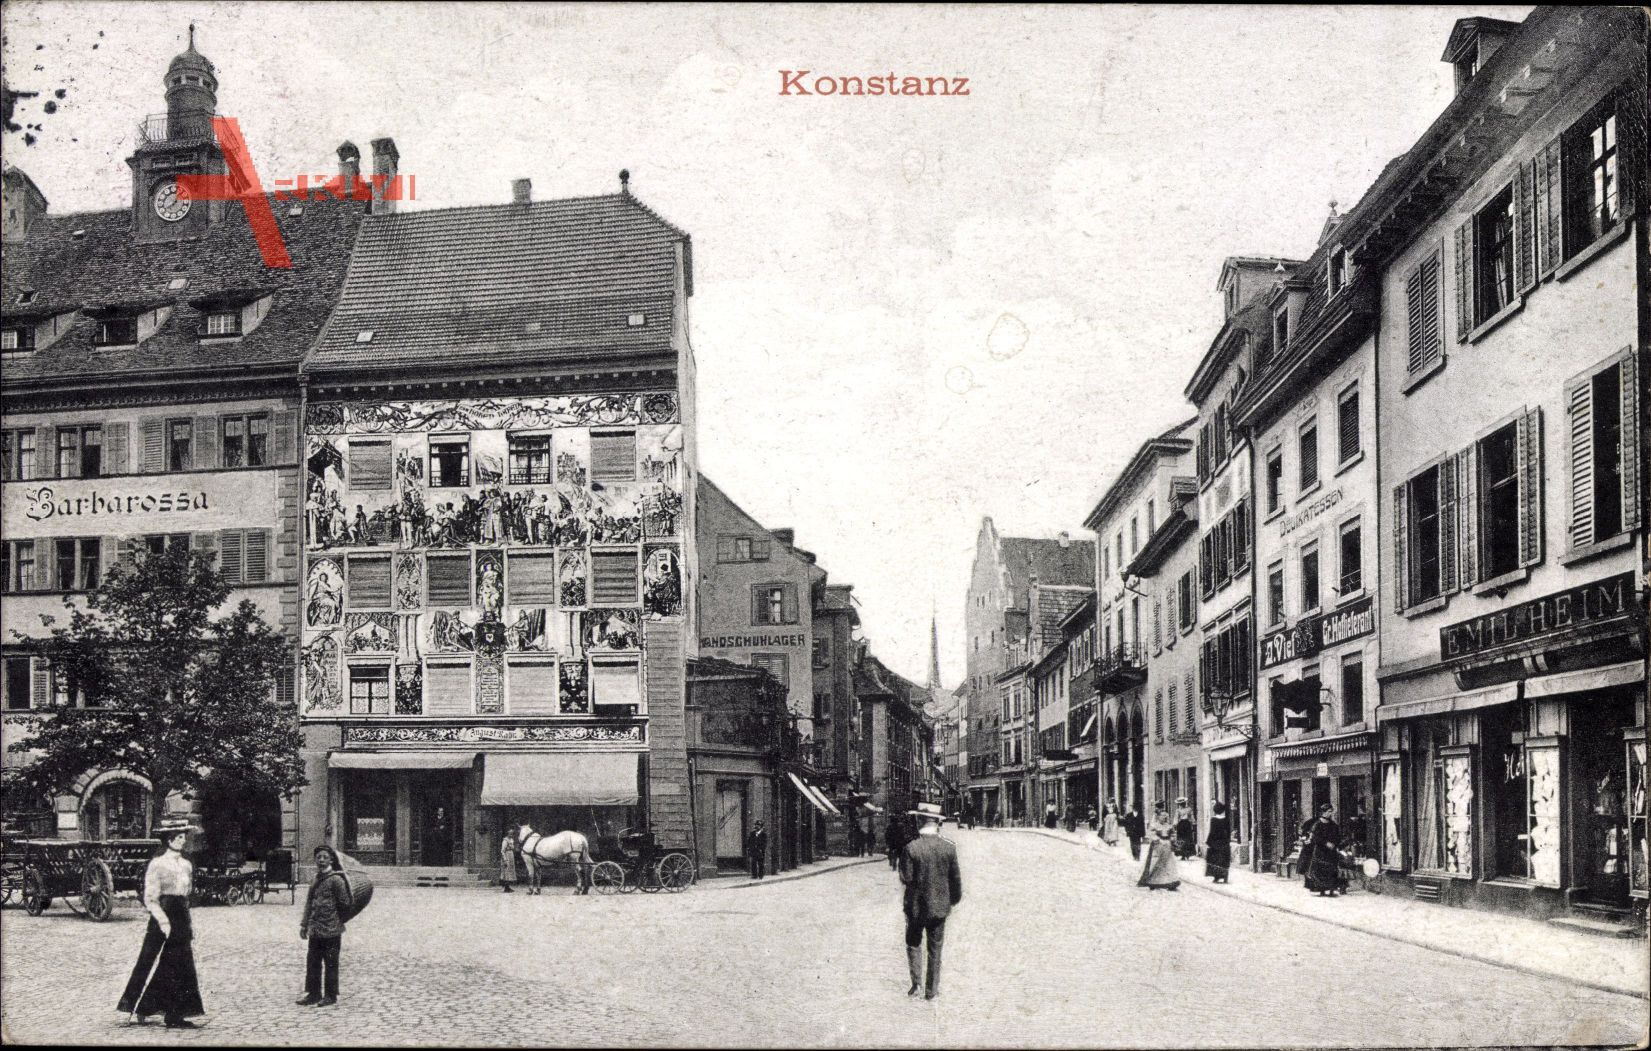 Konstanz am Bodensee, Straßenpartie, Haus Barbarossa, Geschäfte